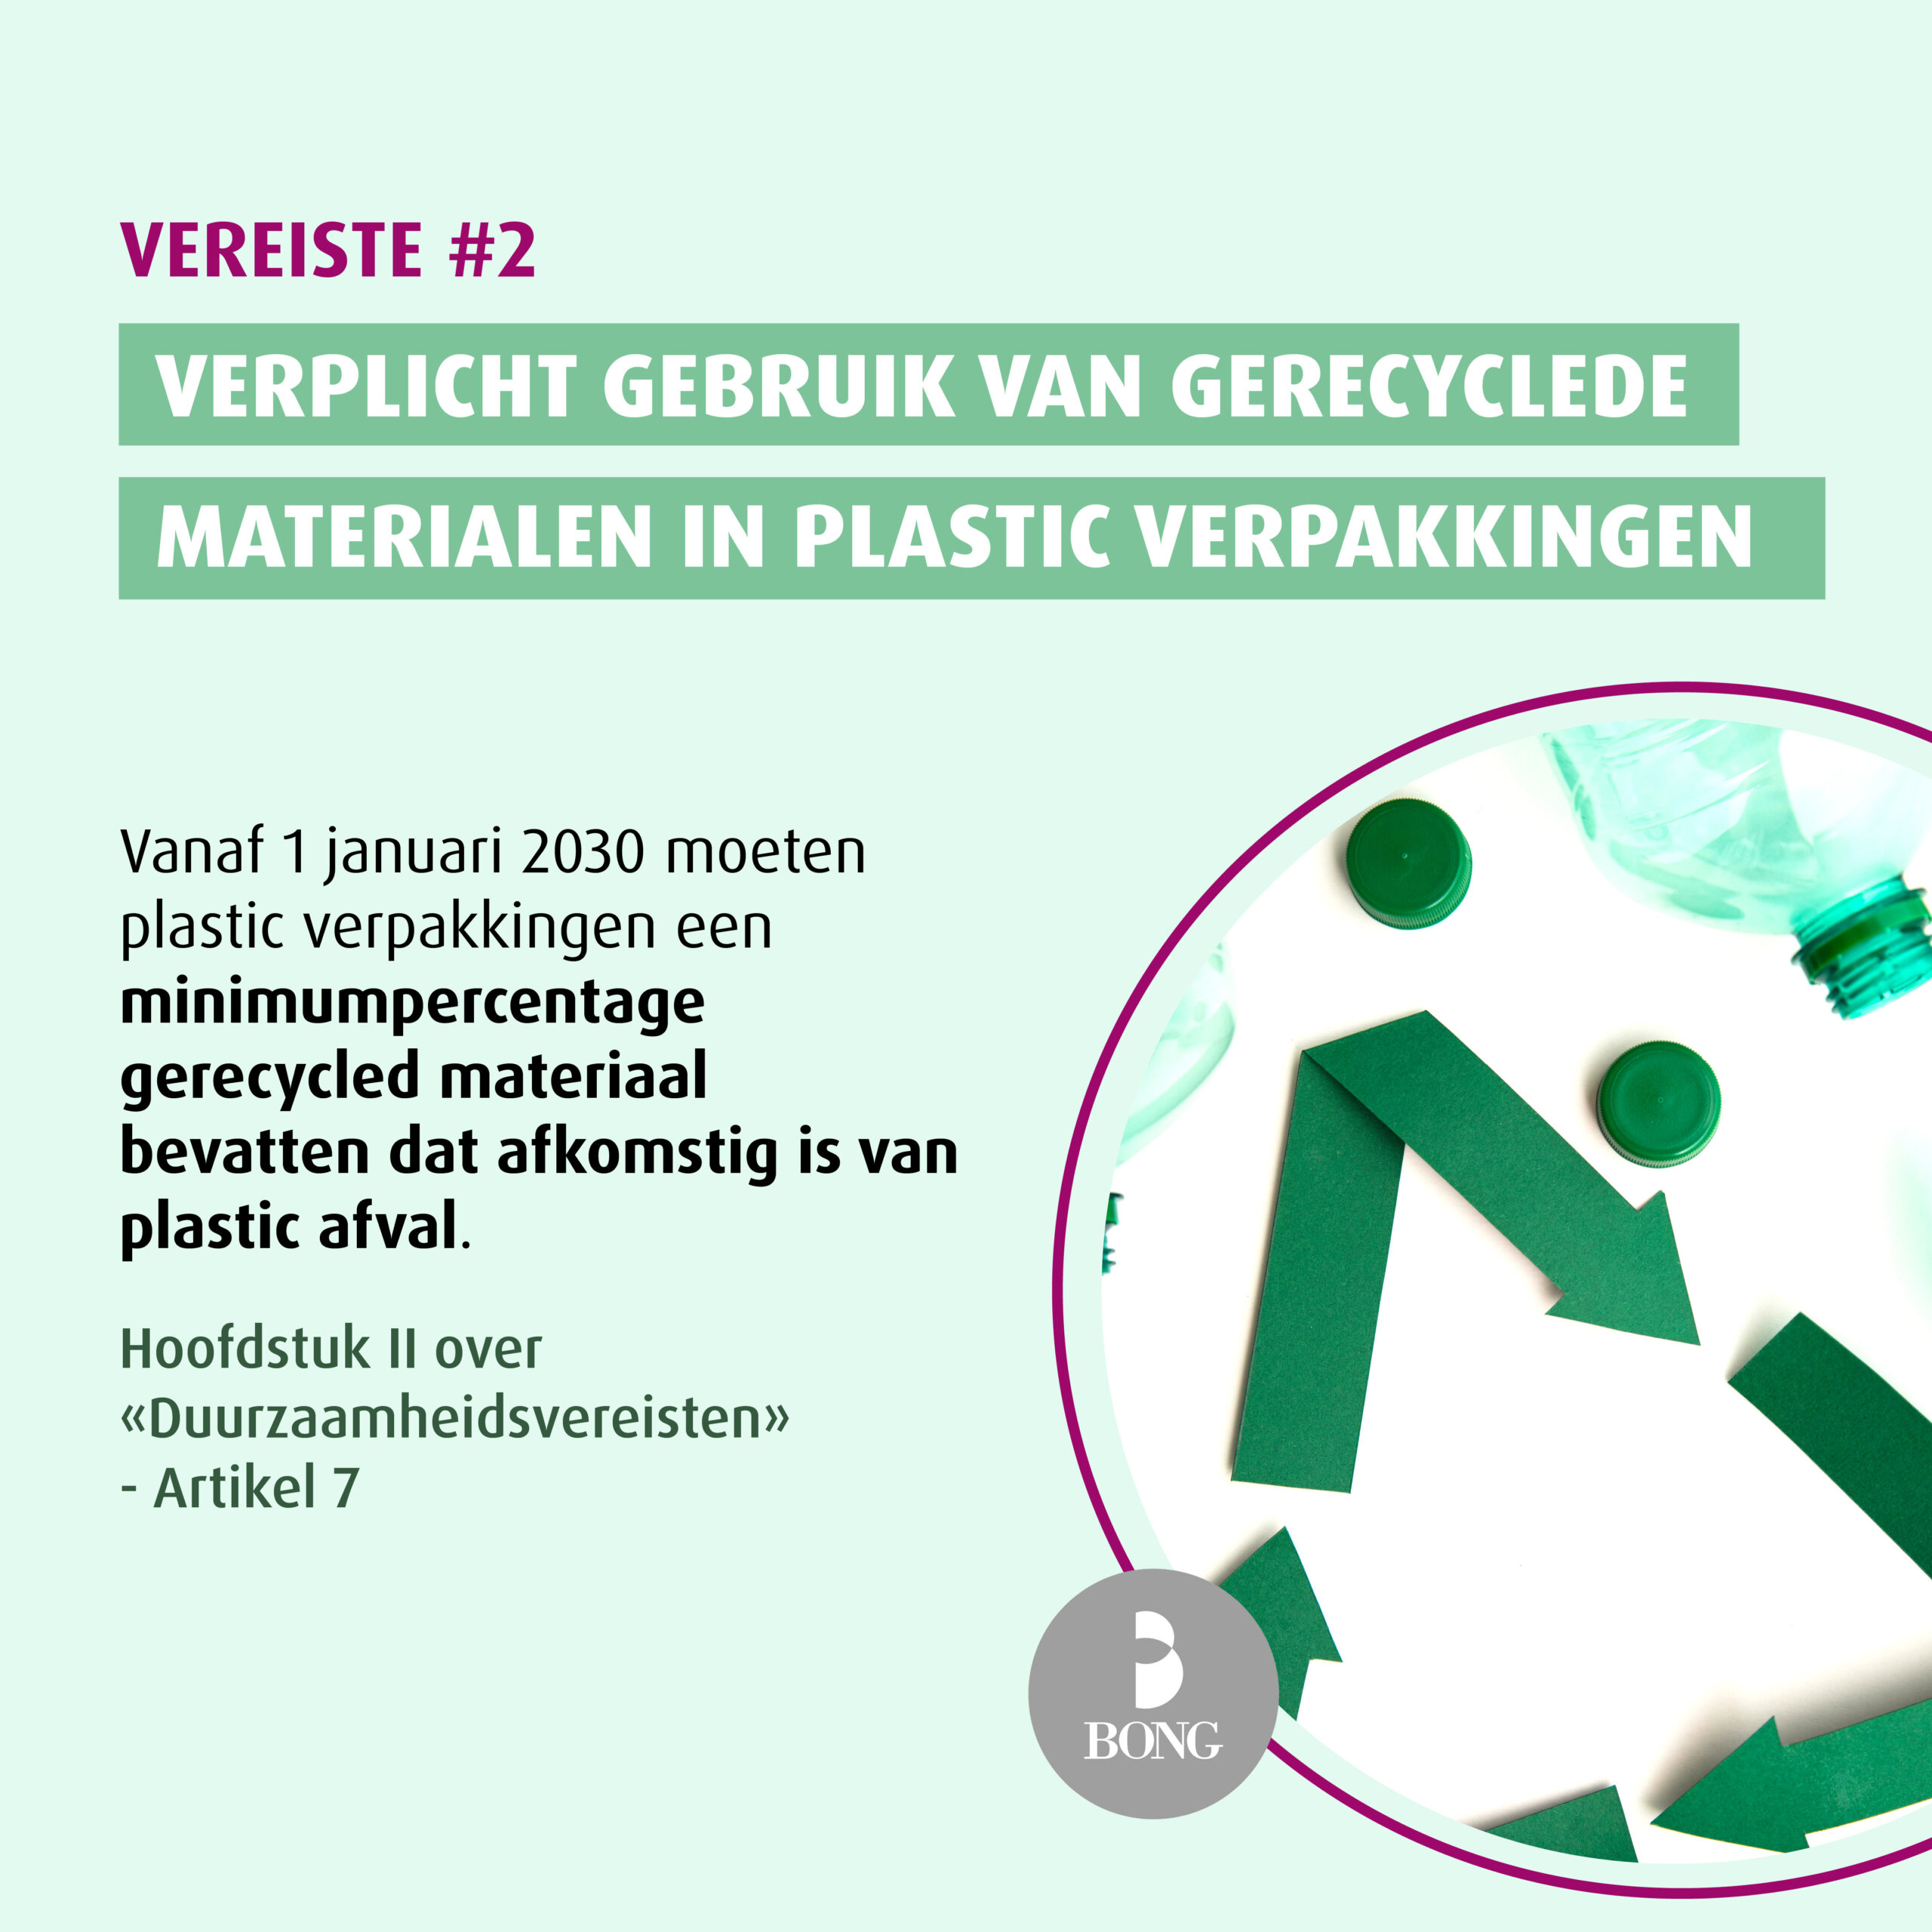 Verplicht gebruik van gerecyclede materialen in plastic verpakkingen